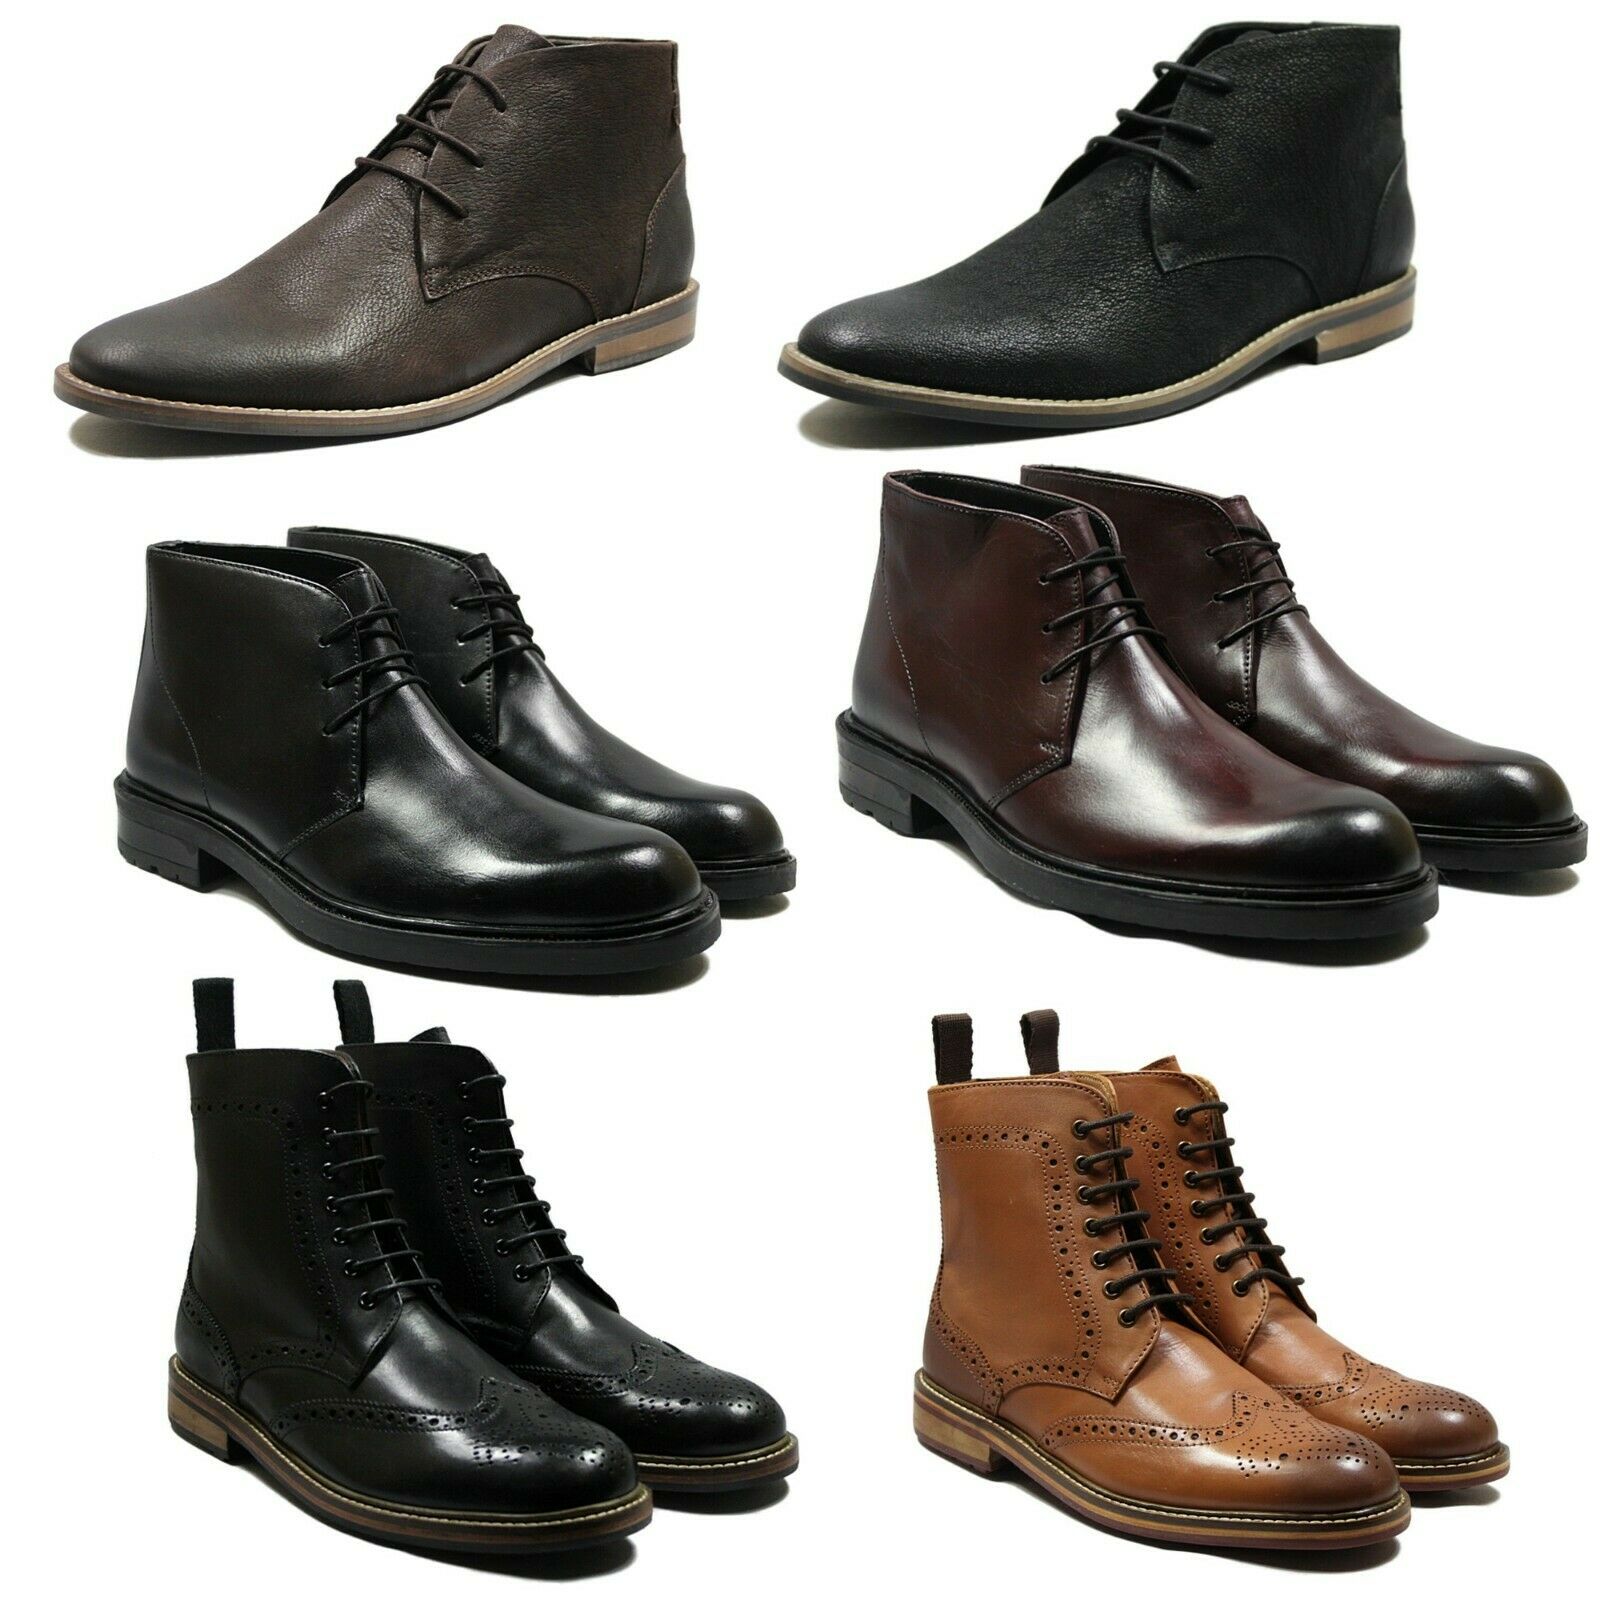 shoe boots uk